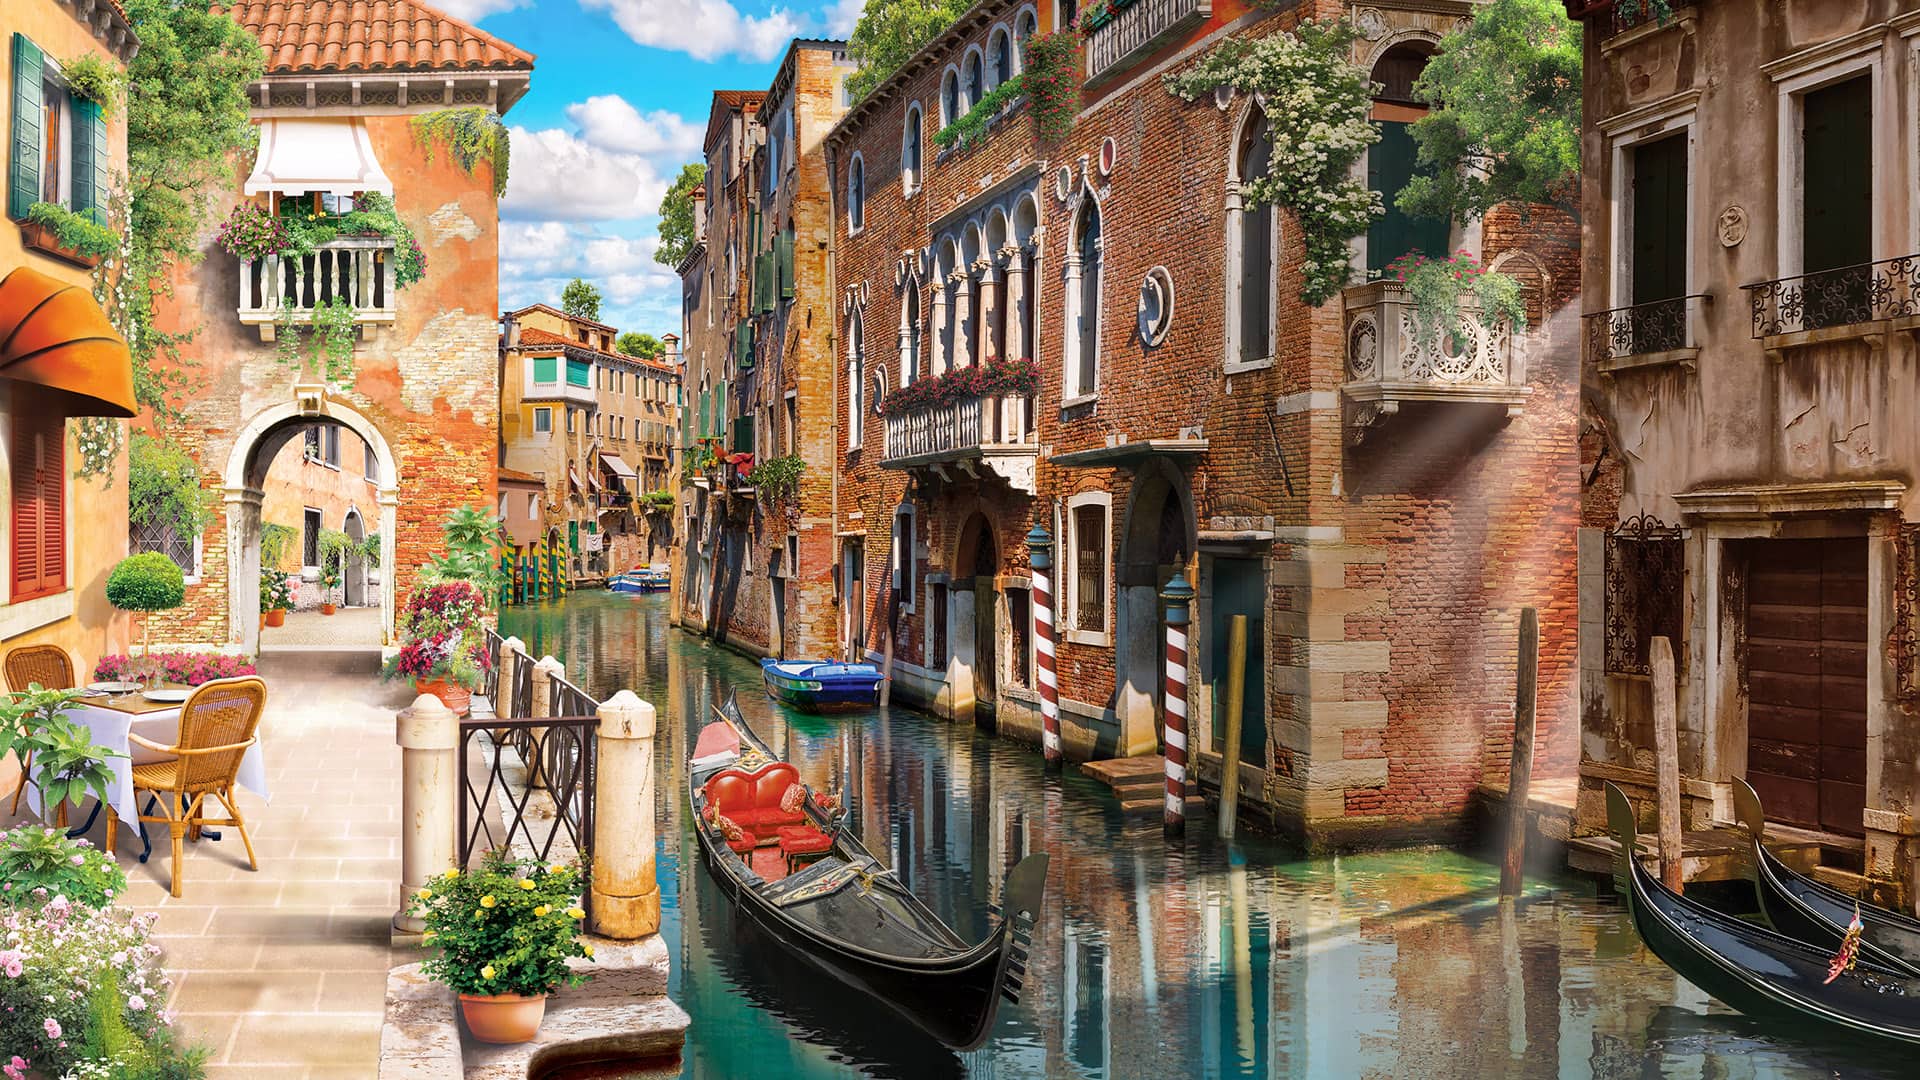 Hình ảnh thơ mộng của thành phố Venice, Ý